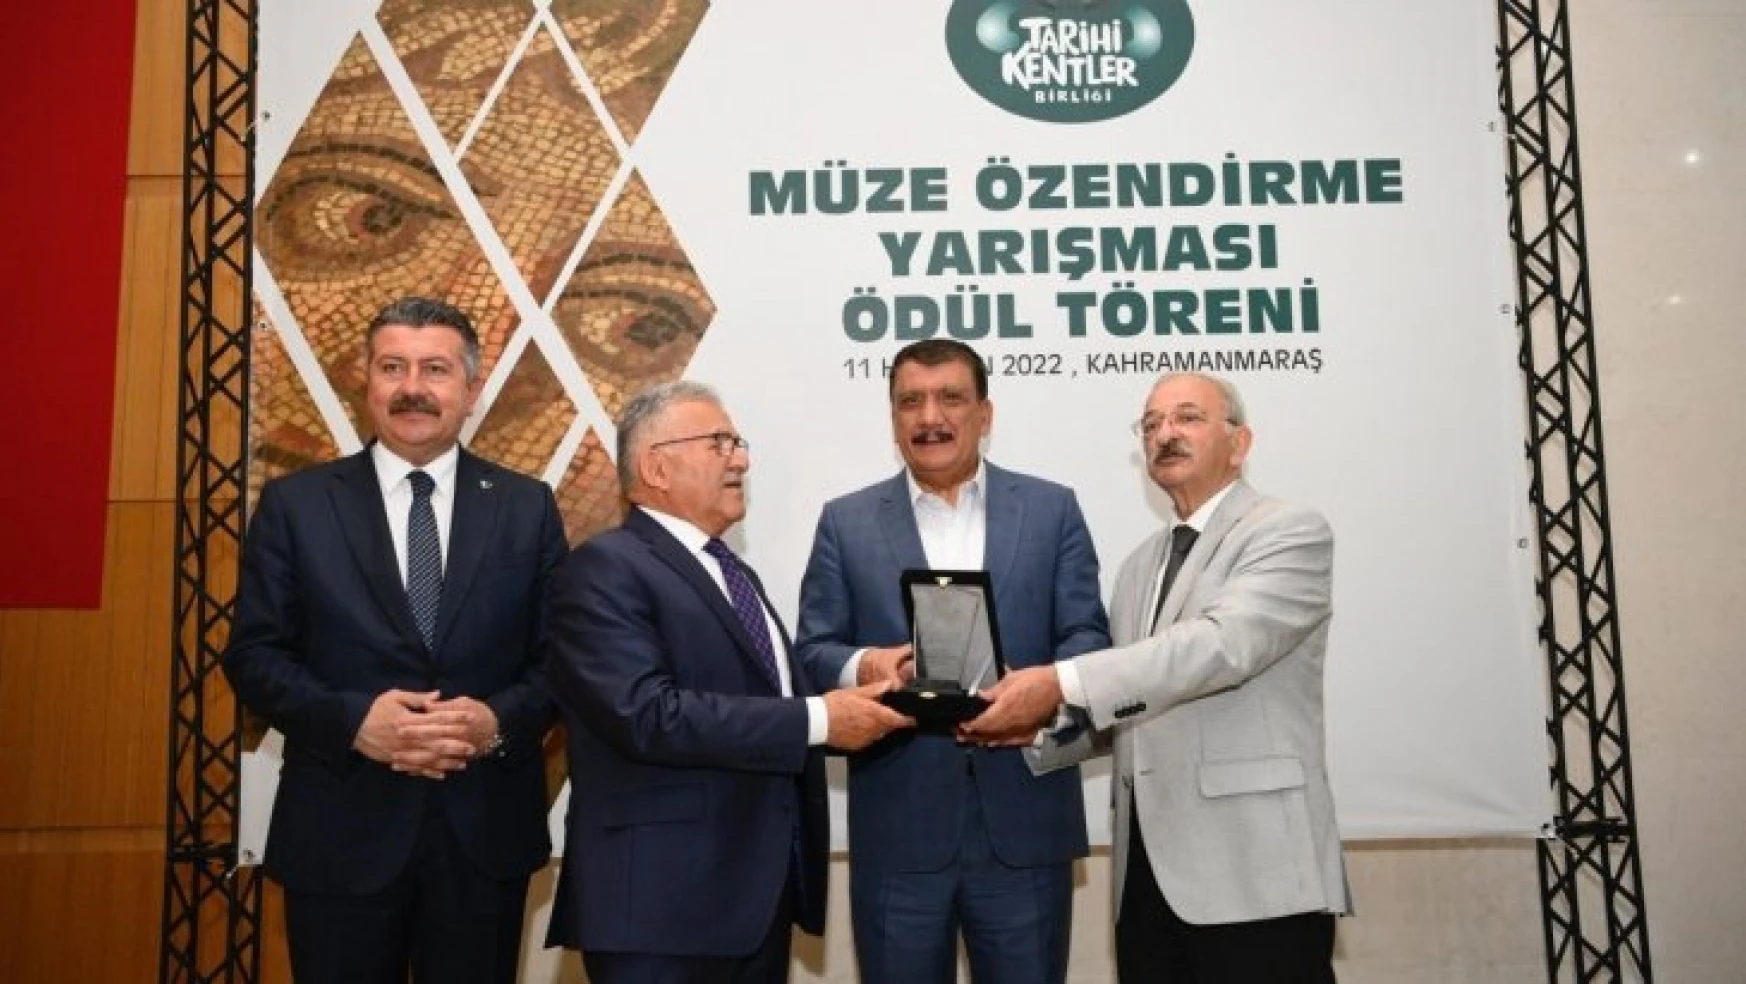 Başkan Gürkan'a Tarihi Kentler Birliği'nden jüri özel ödülü